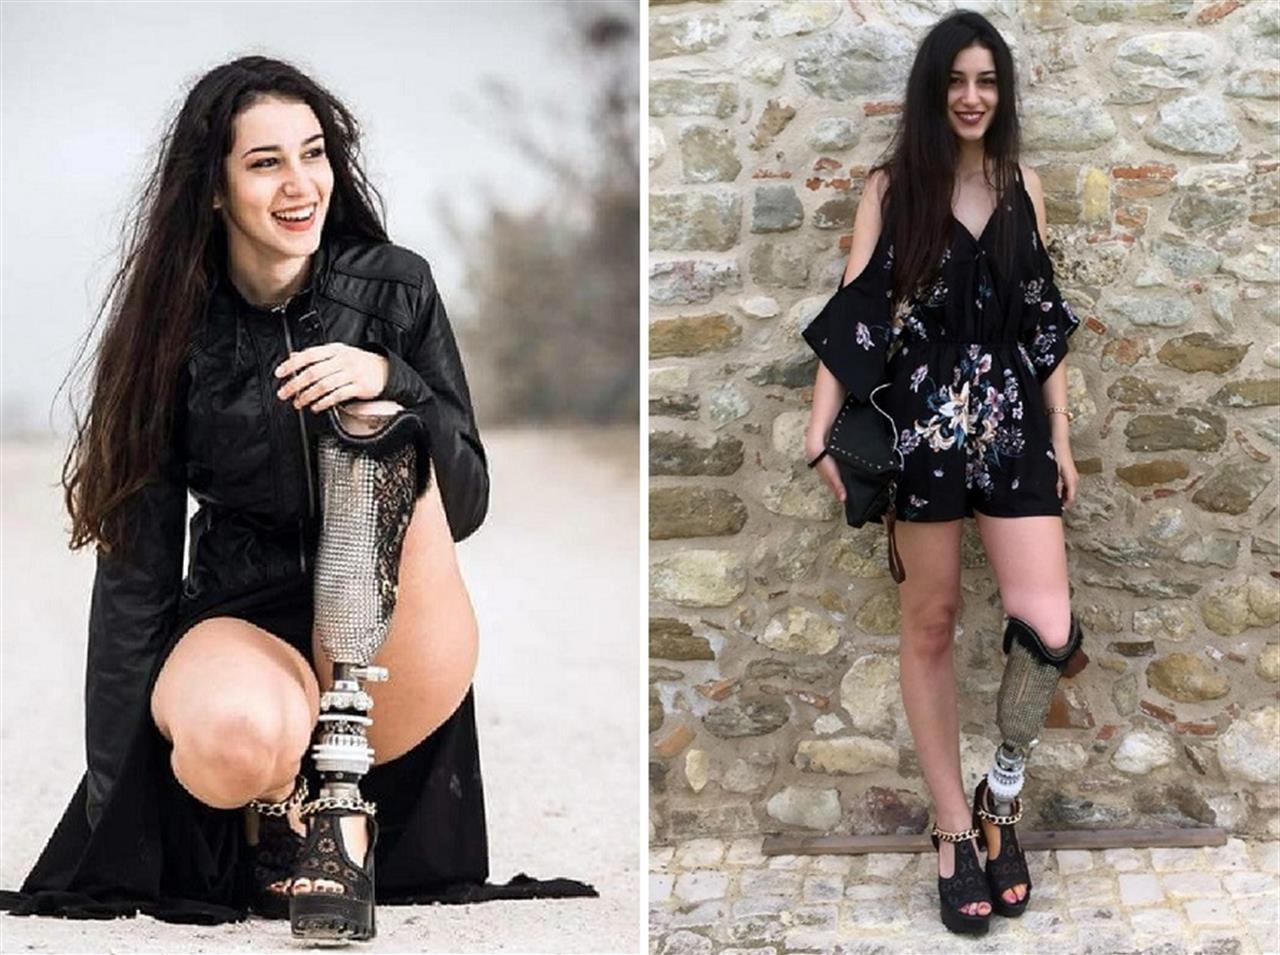 Chiara Bondi a Miss Italia con una protesi alla gamba sinistra